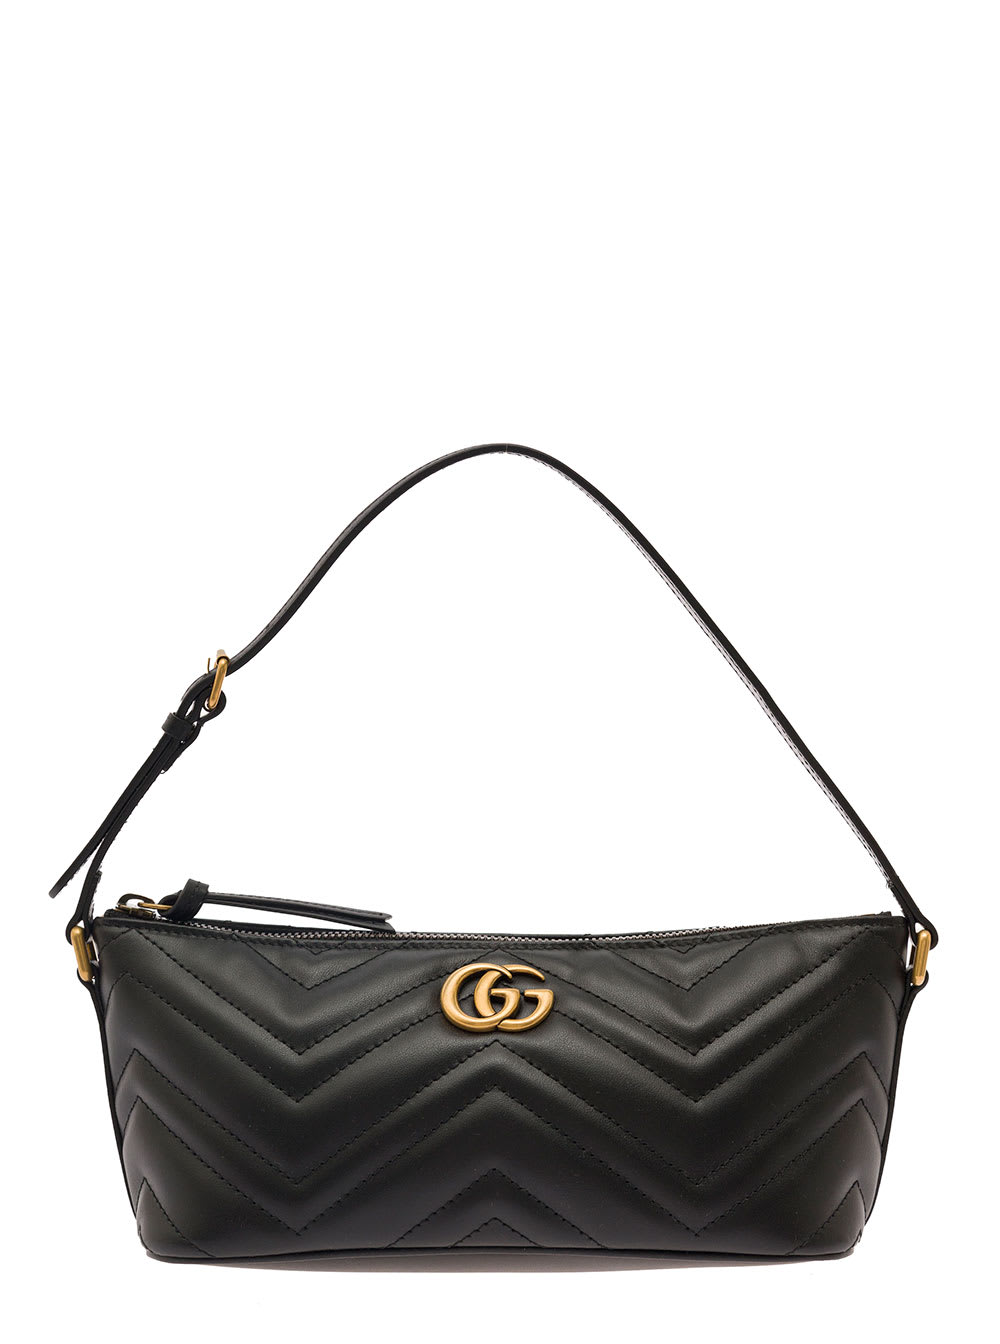 Gucci Gg Marmont Shoulder Bag Black